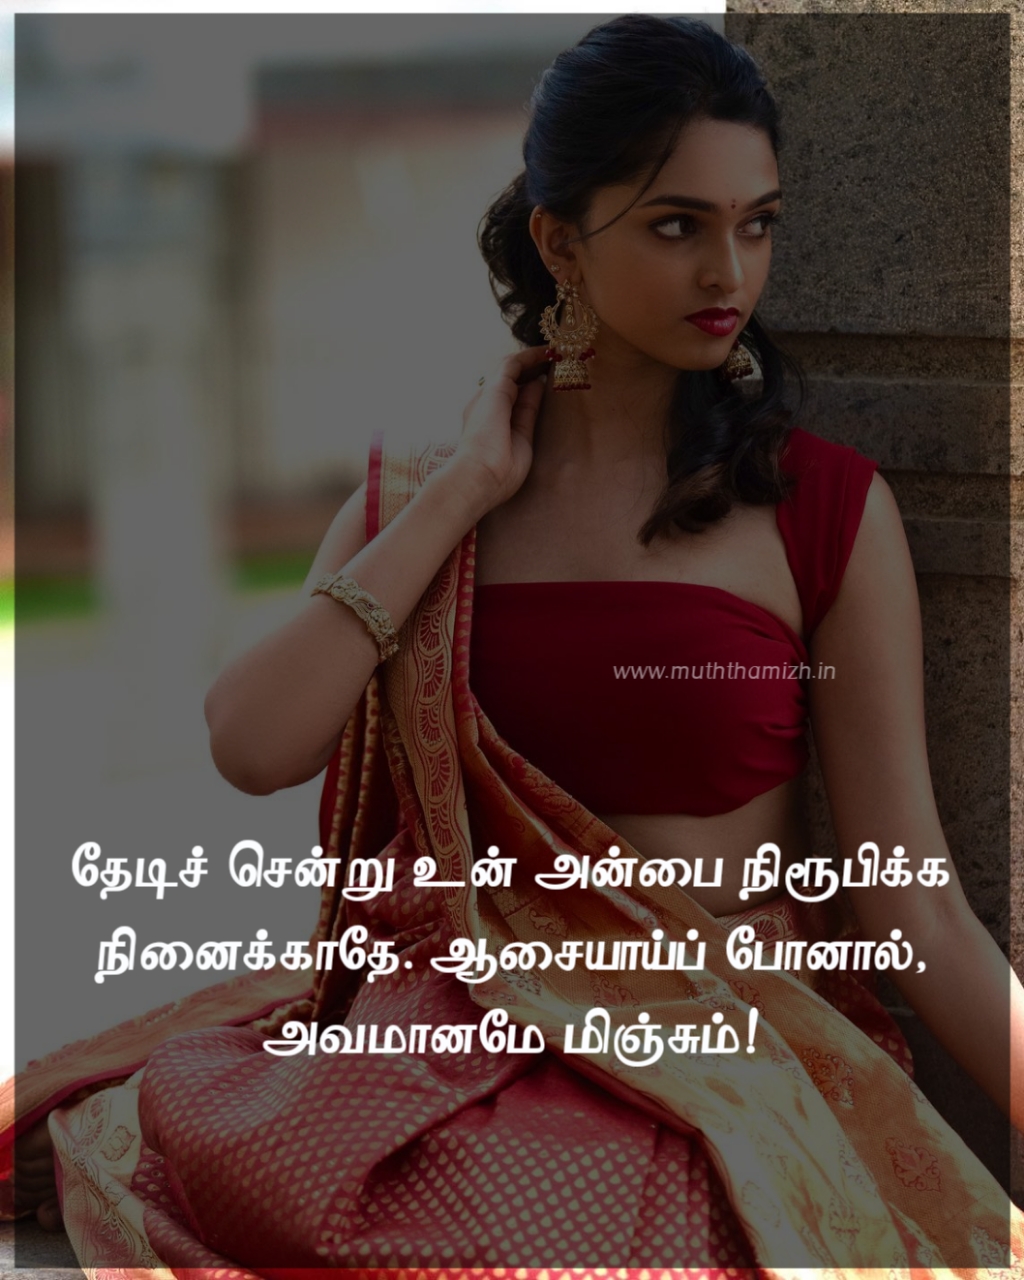 Avamanam-Tamil-Quotes